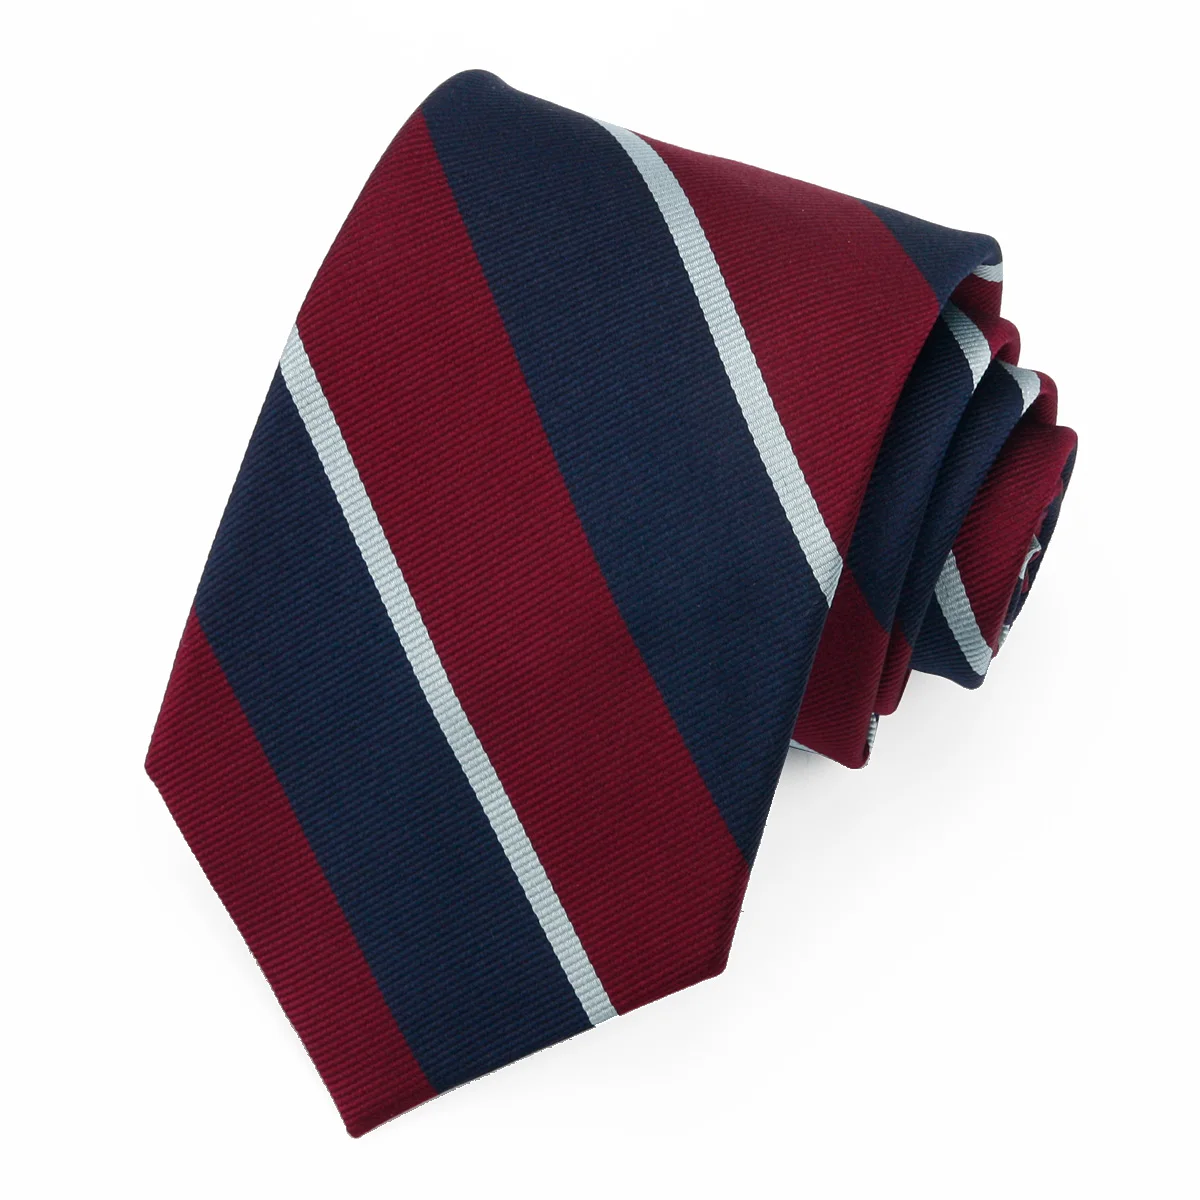 Мужские галстуки Hamocigia, жаккардовые тканые галстуки в полоску бордового цвета из 100% шелка, новейший дизайн